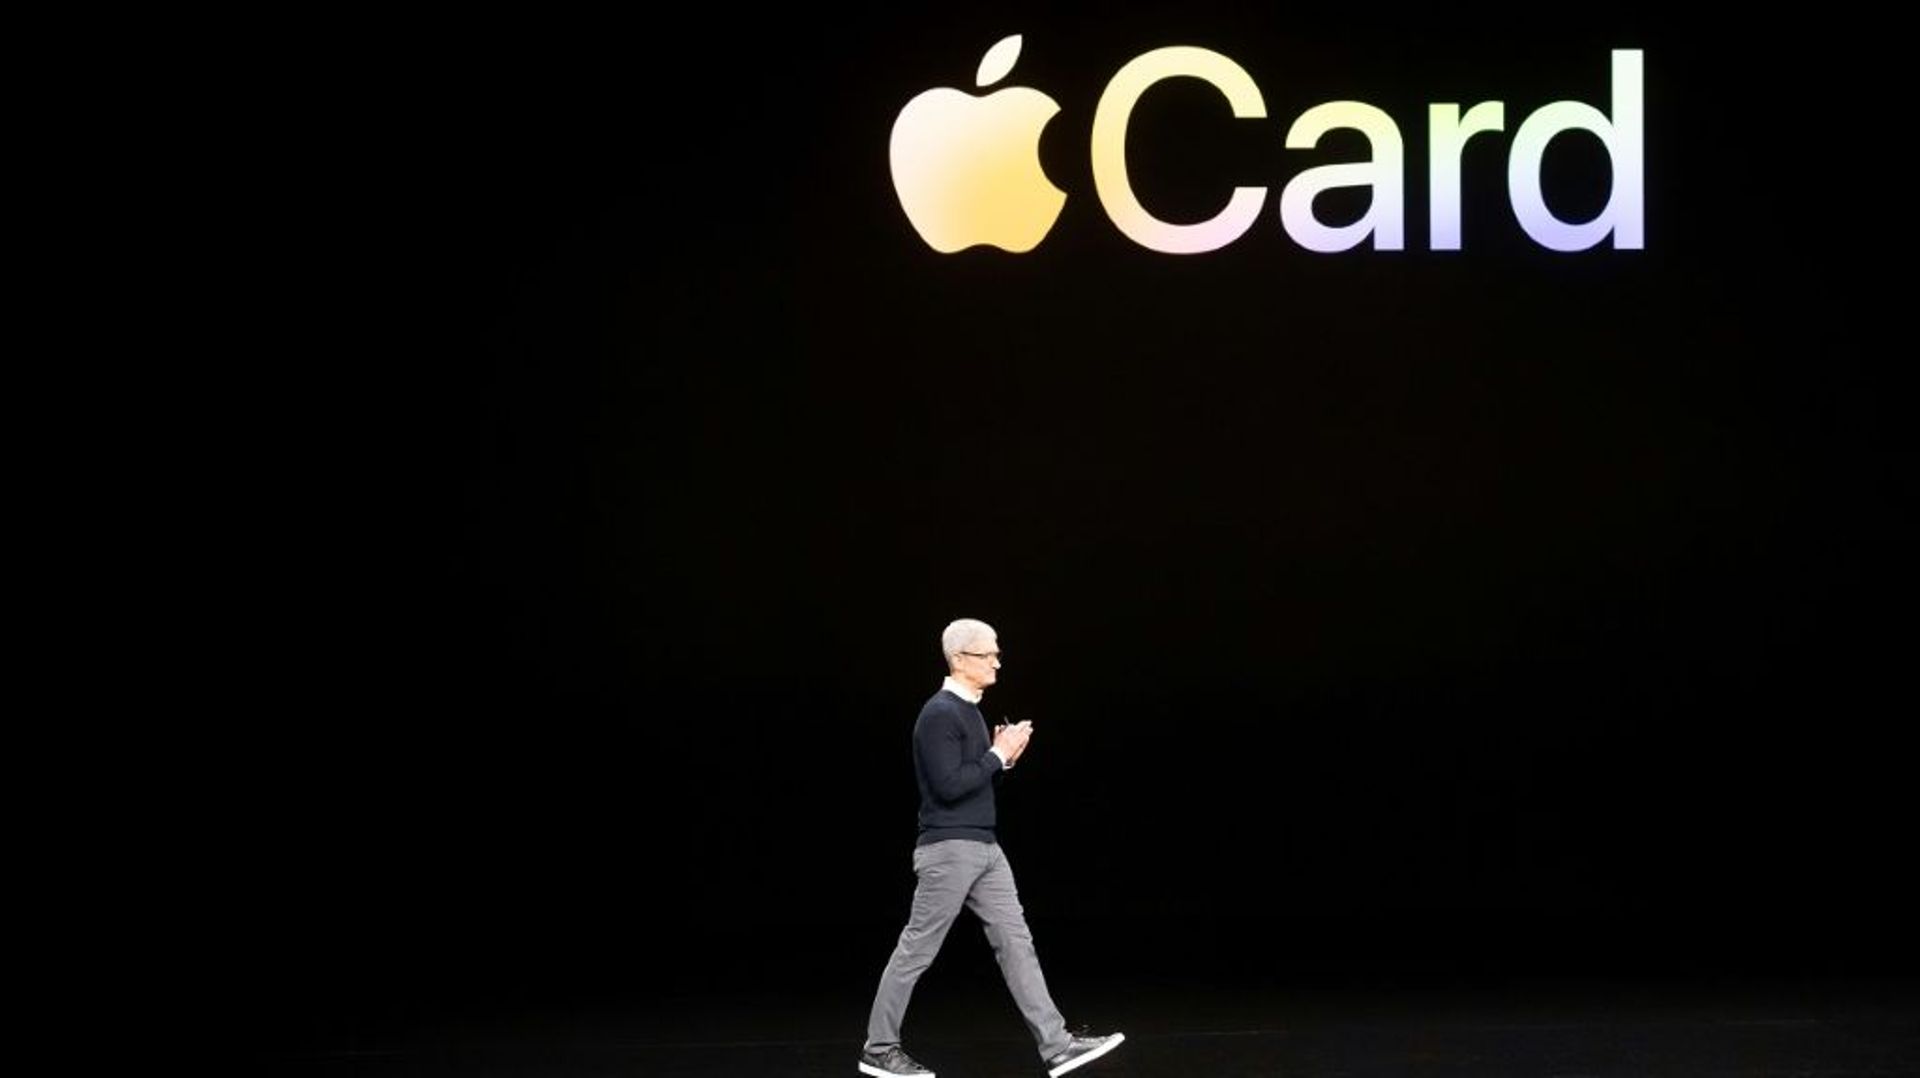 Le PDG d'Apple, Tim Cook, le 25 mars 2019 à Cupertino pour la présentation de Apple Card, la carte de crédit d'Apple